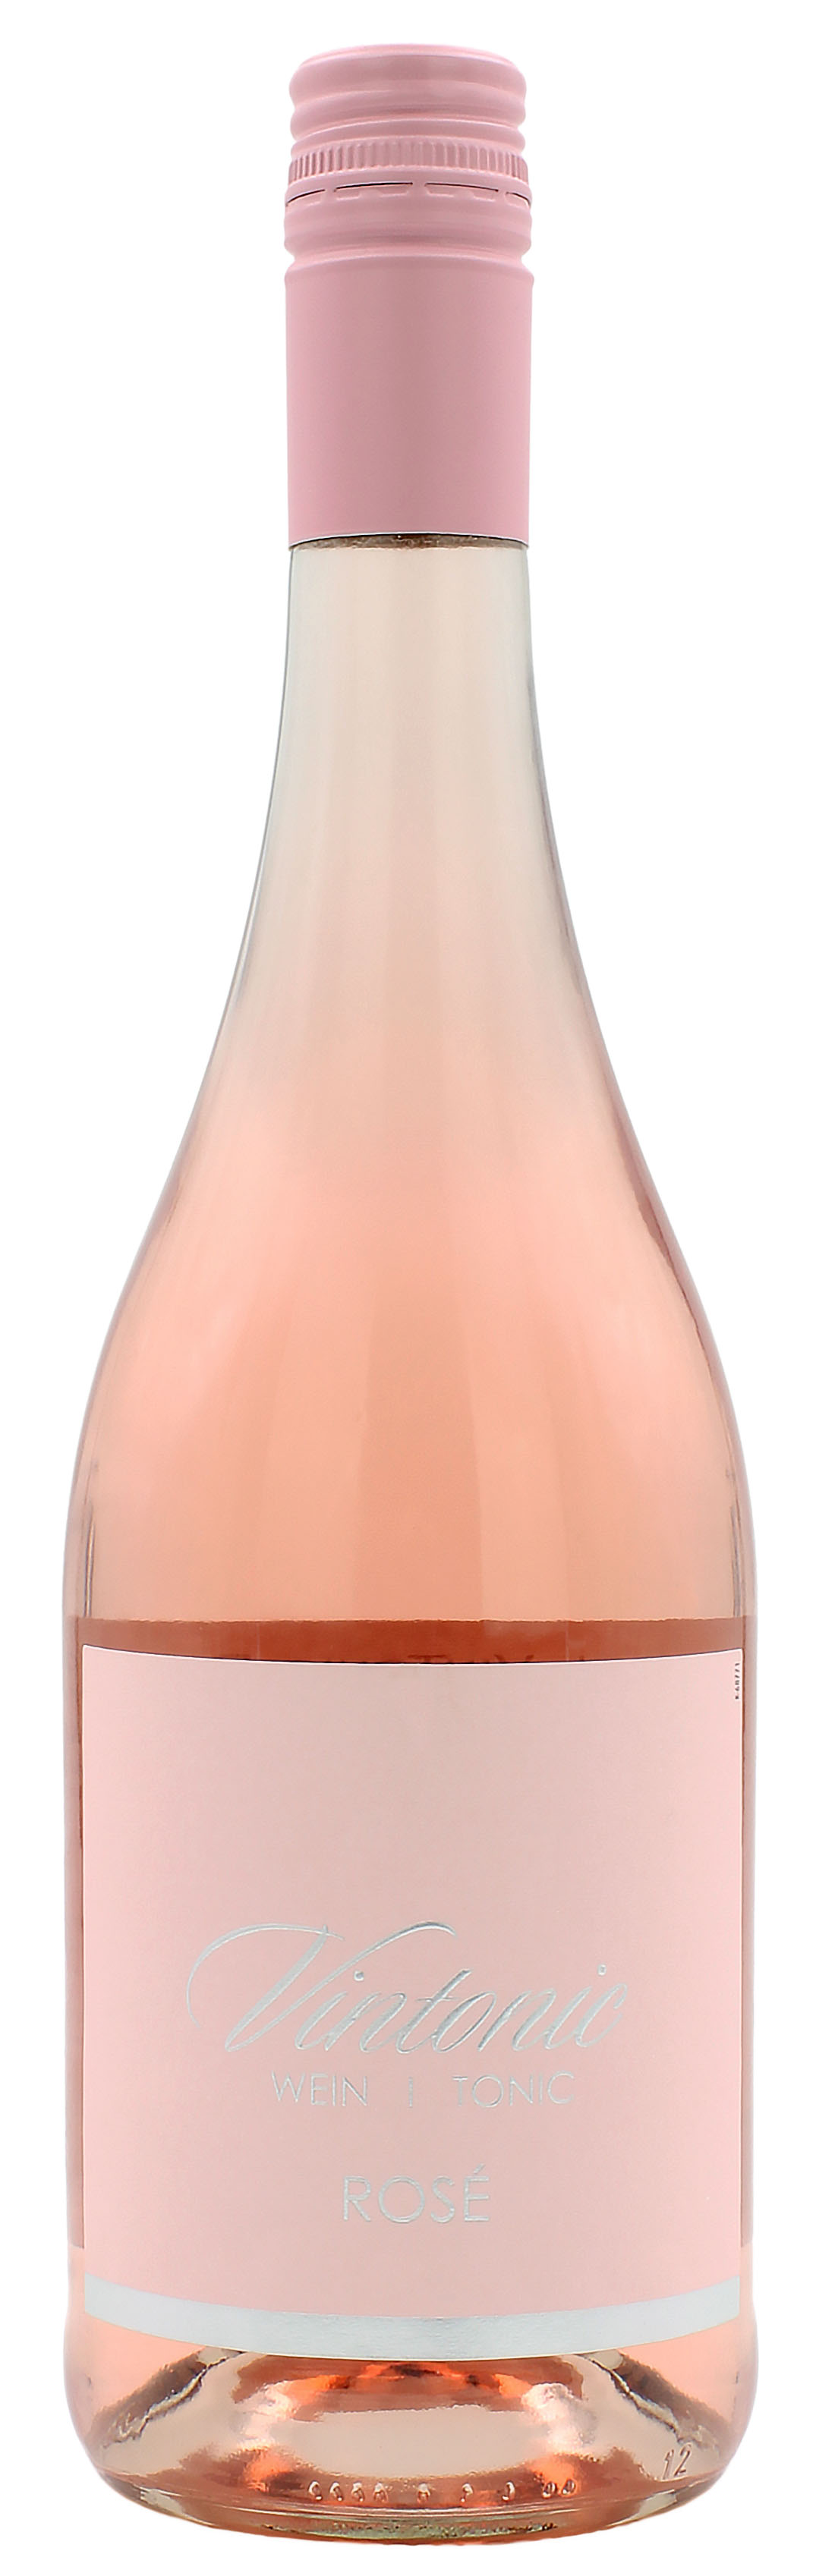 VinTonic Rosé 5.7% 0,75l